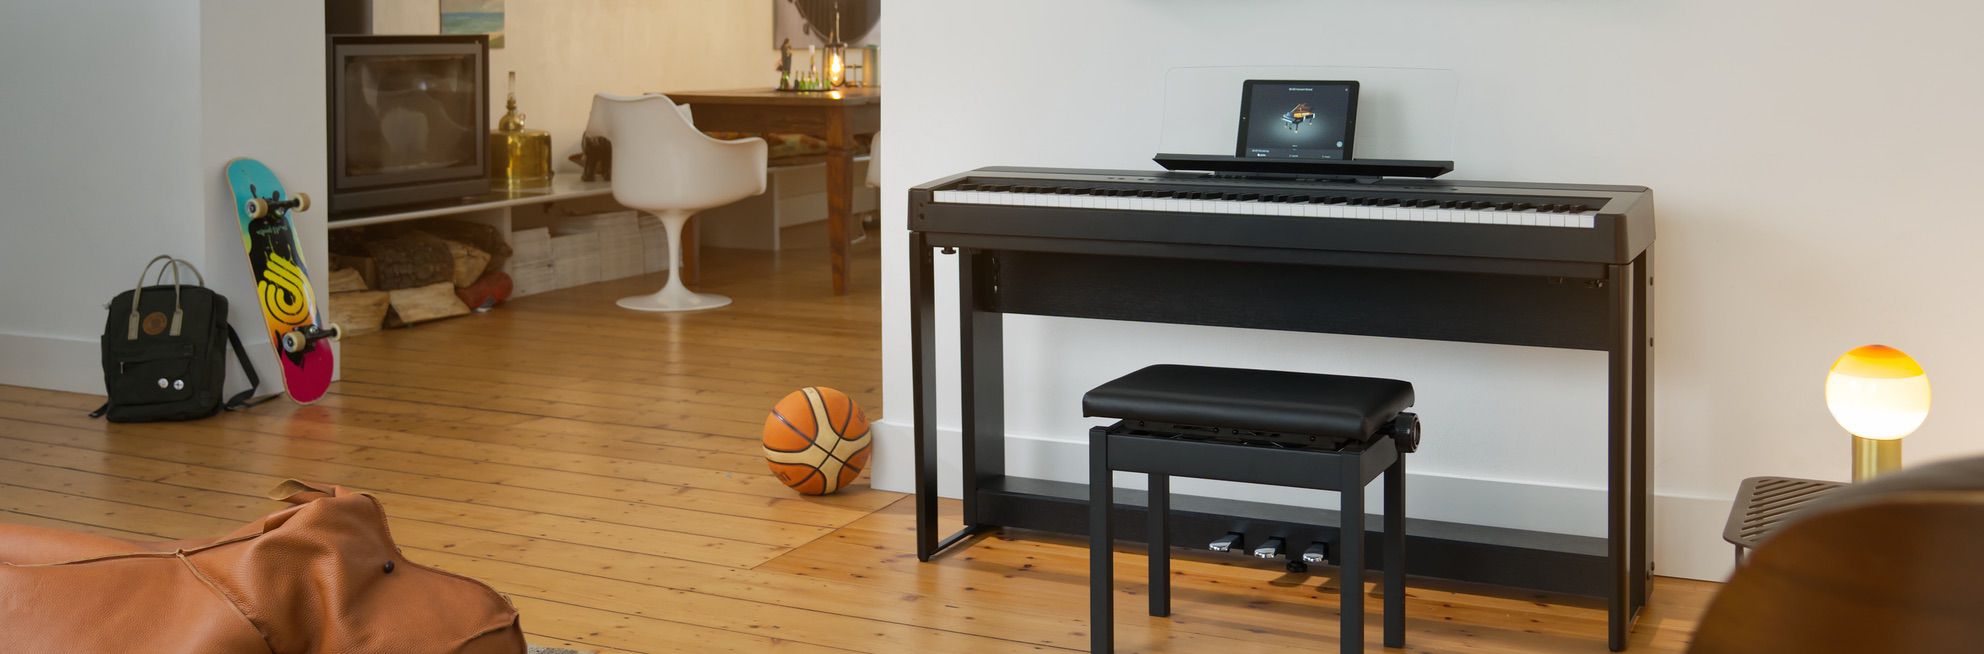 Entdecken Sie das Kawai ES 920 Stagepiano und Digitalpiano der ES Serie im Pianohaus Filipski